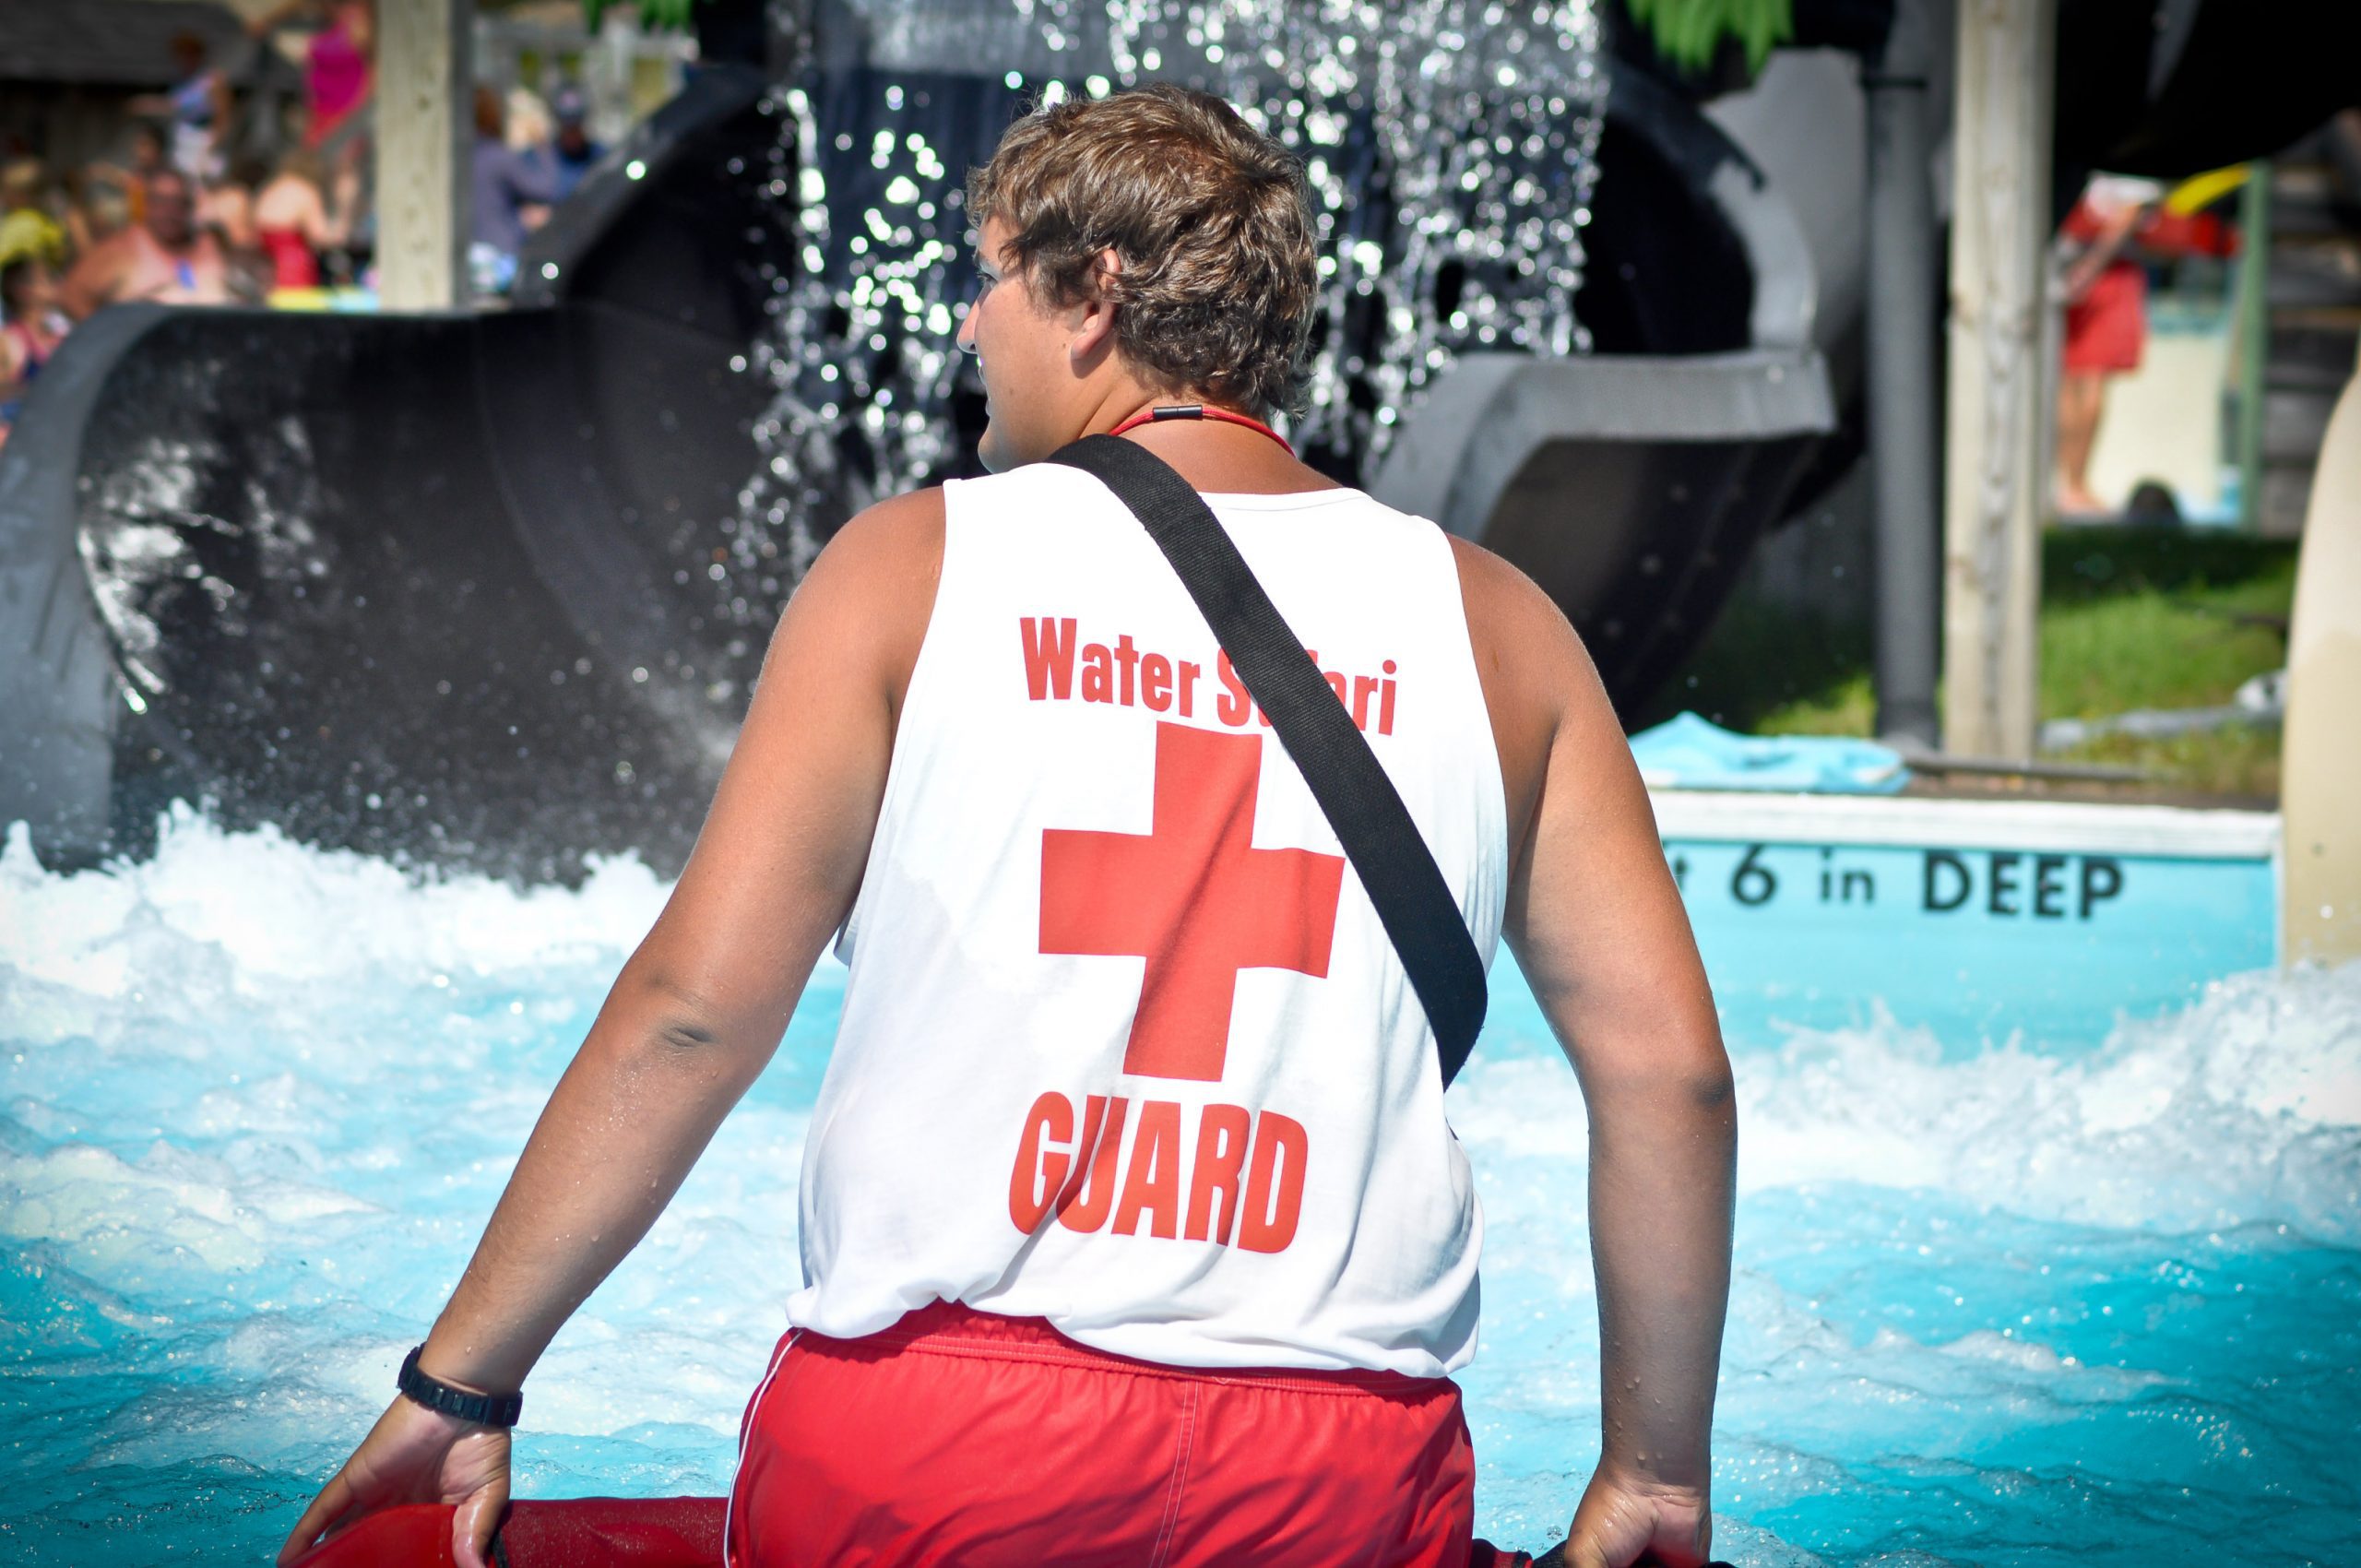 Free Lifeguarding Course